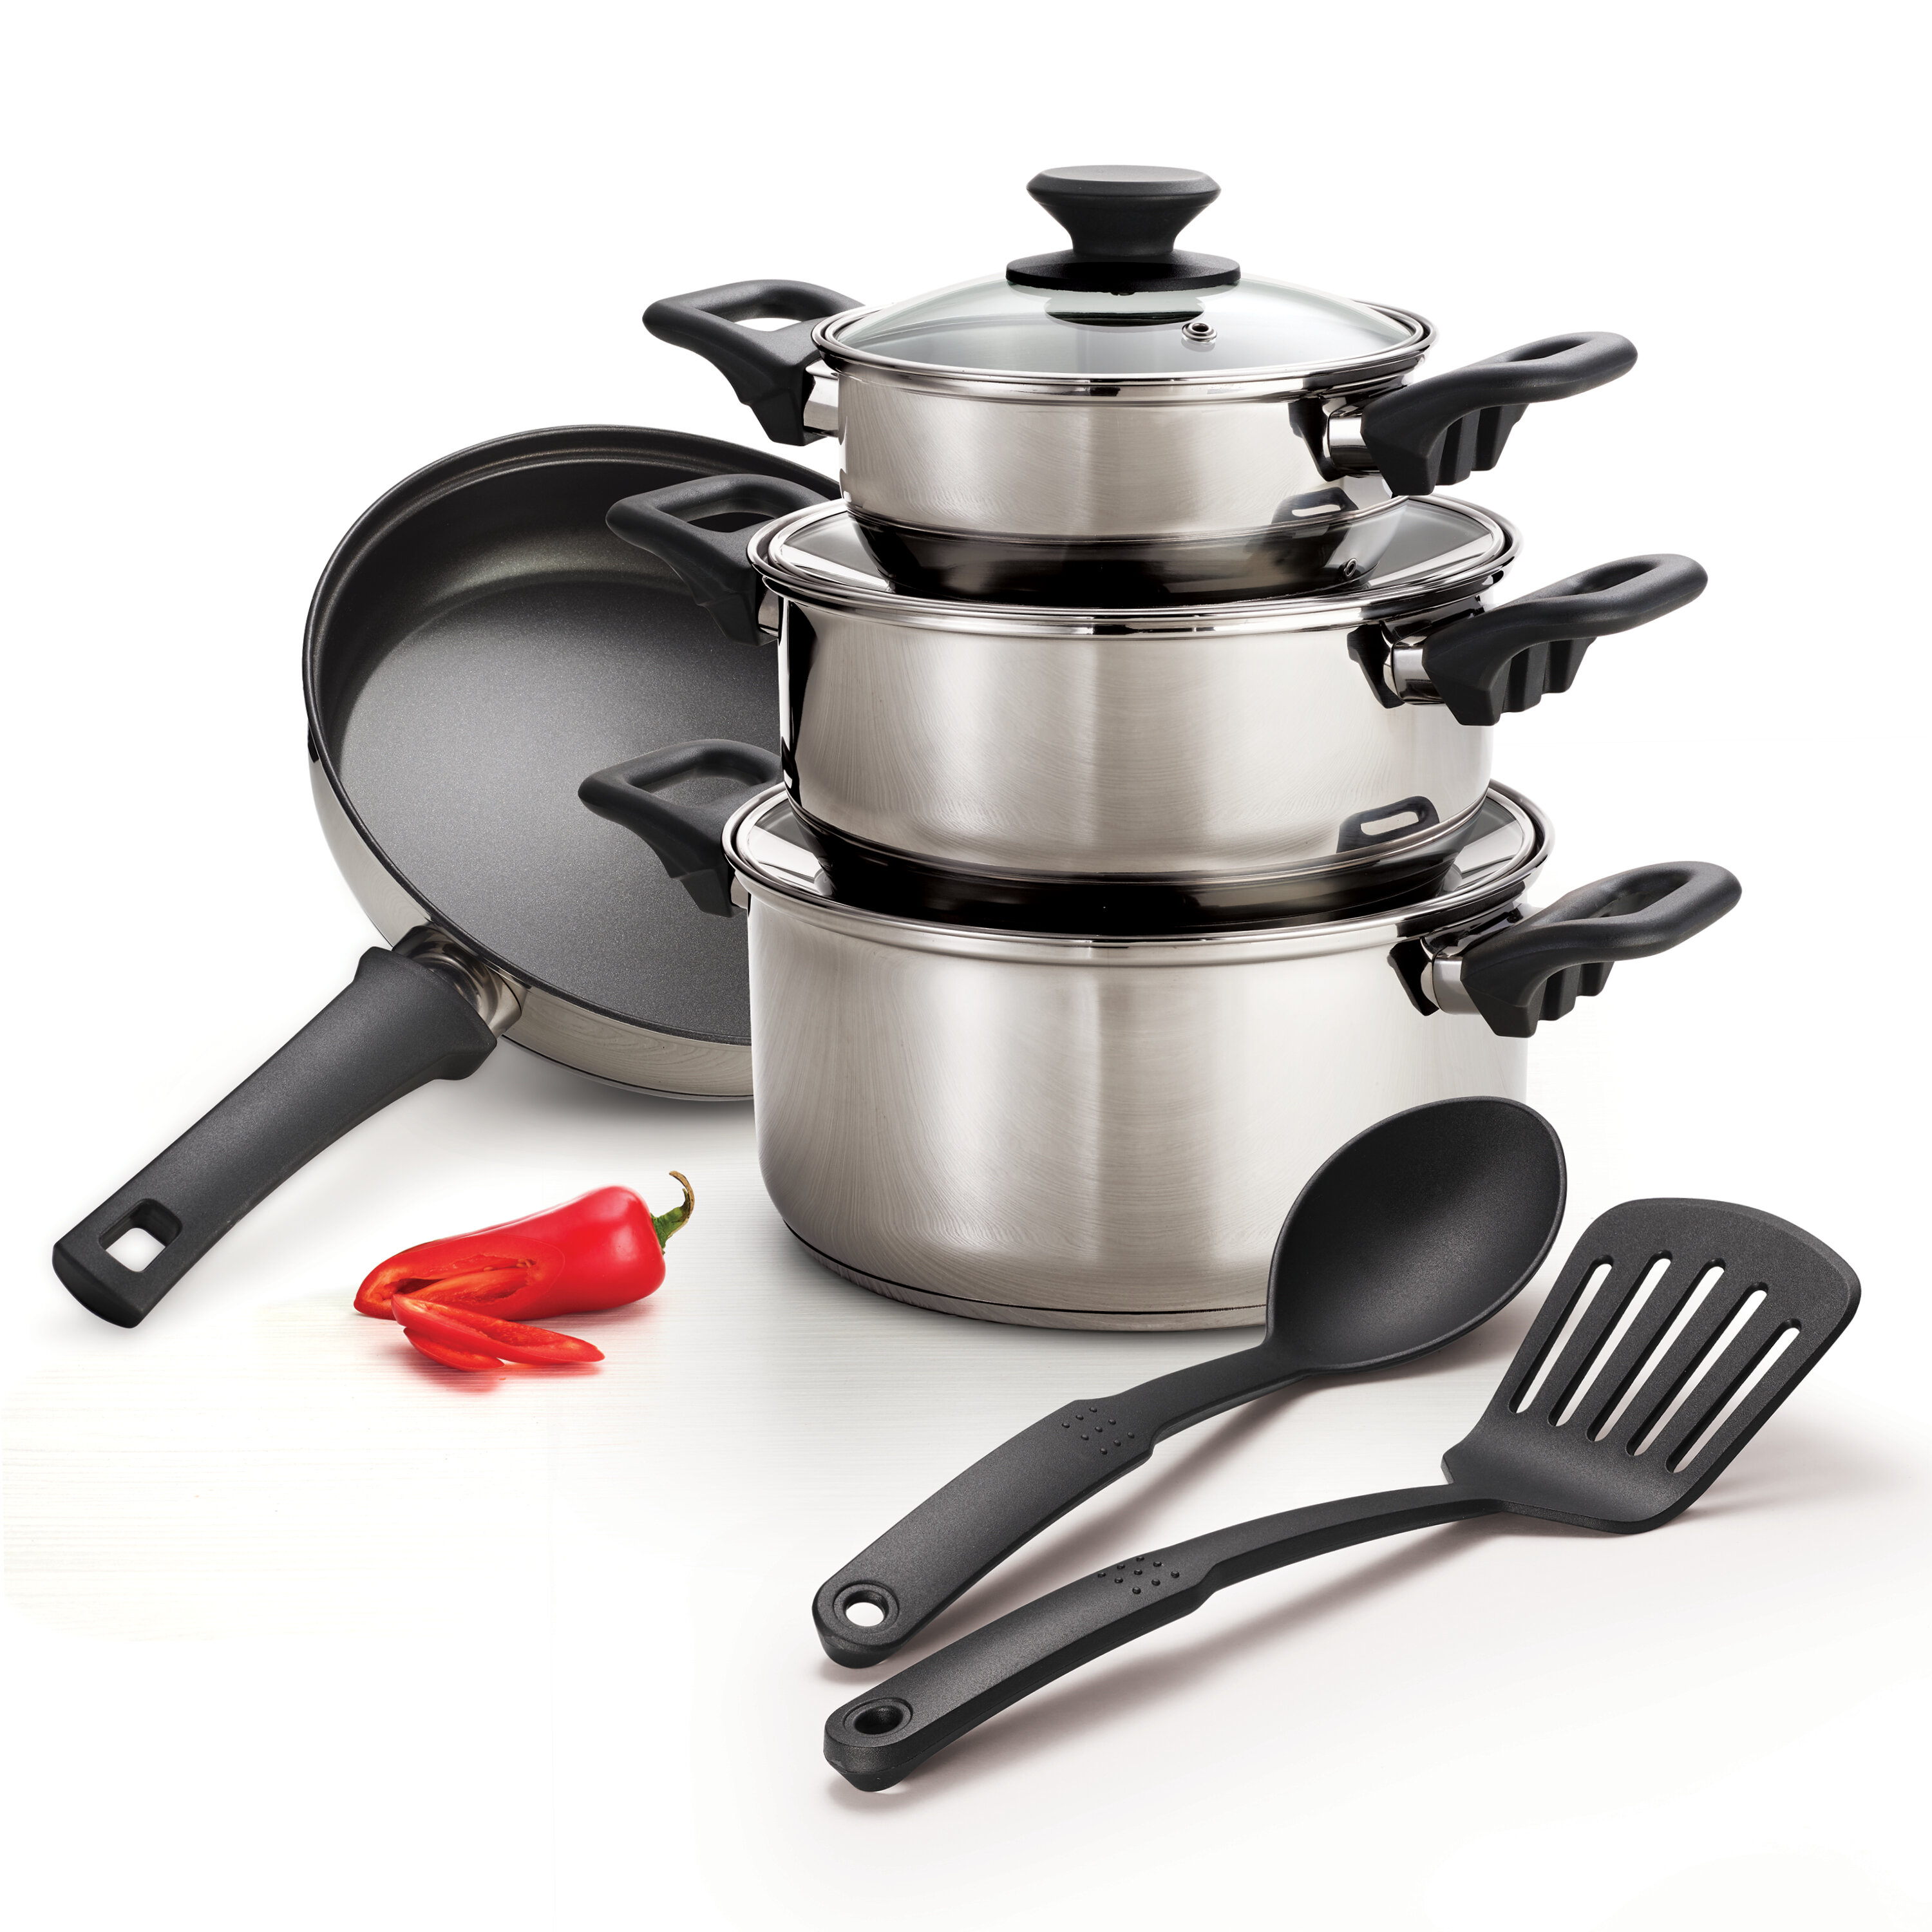 https://assets.wfcdn.com/im/03066423/compr-r85/1244/124419277/tramontina-9-pc-stainless-steel-cookware-set.jpg